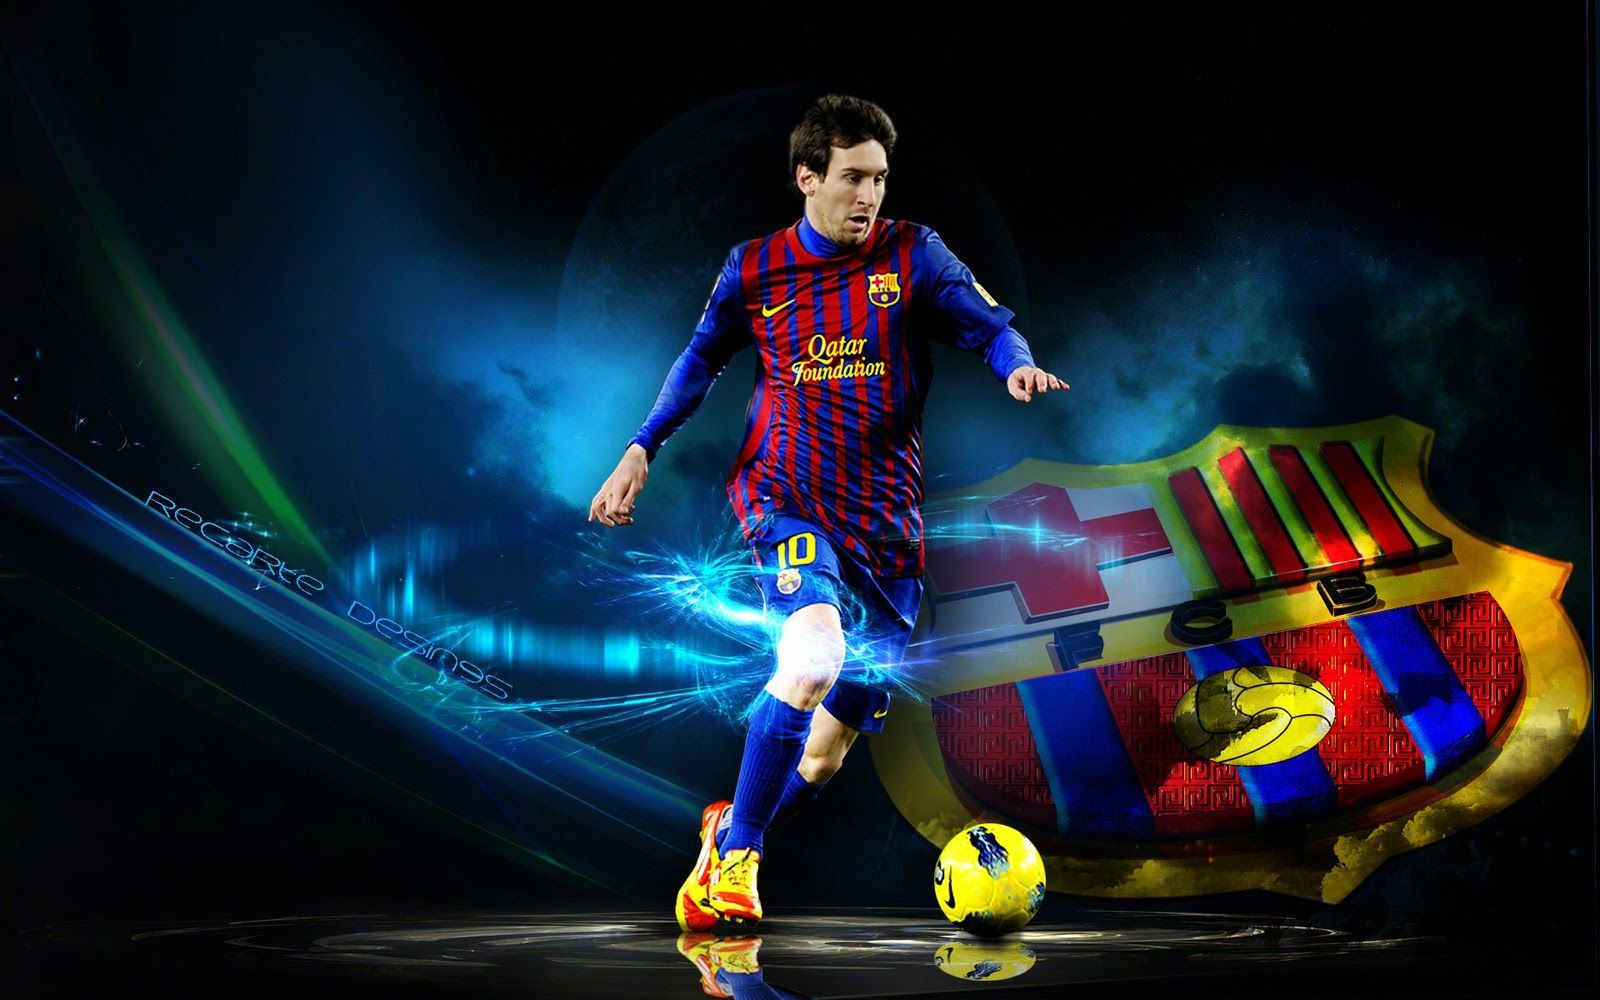 Messi soccer wallpapers - Nếu bạn là một fan hâm mộ của siêu sao bóng đá Lionel Messi, chắc chắn bạn sẽ không muốn bỏ lỡ những bộ sưu tập này. Bạn sẽ được thưởng thức những tấm hình ấn tượng nhất của Messi, đầy tài năng và sự nỗ lực.